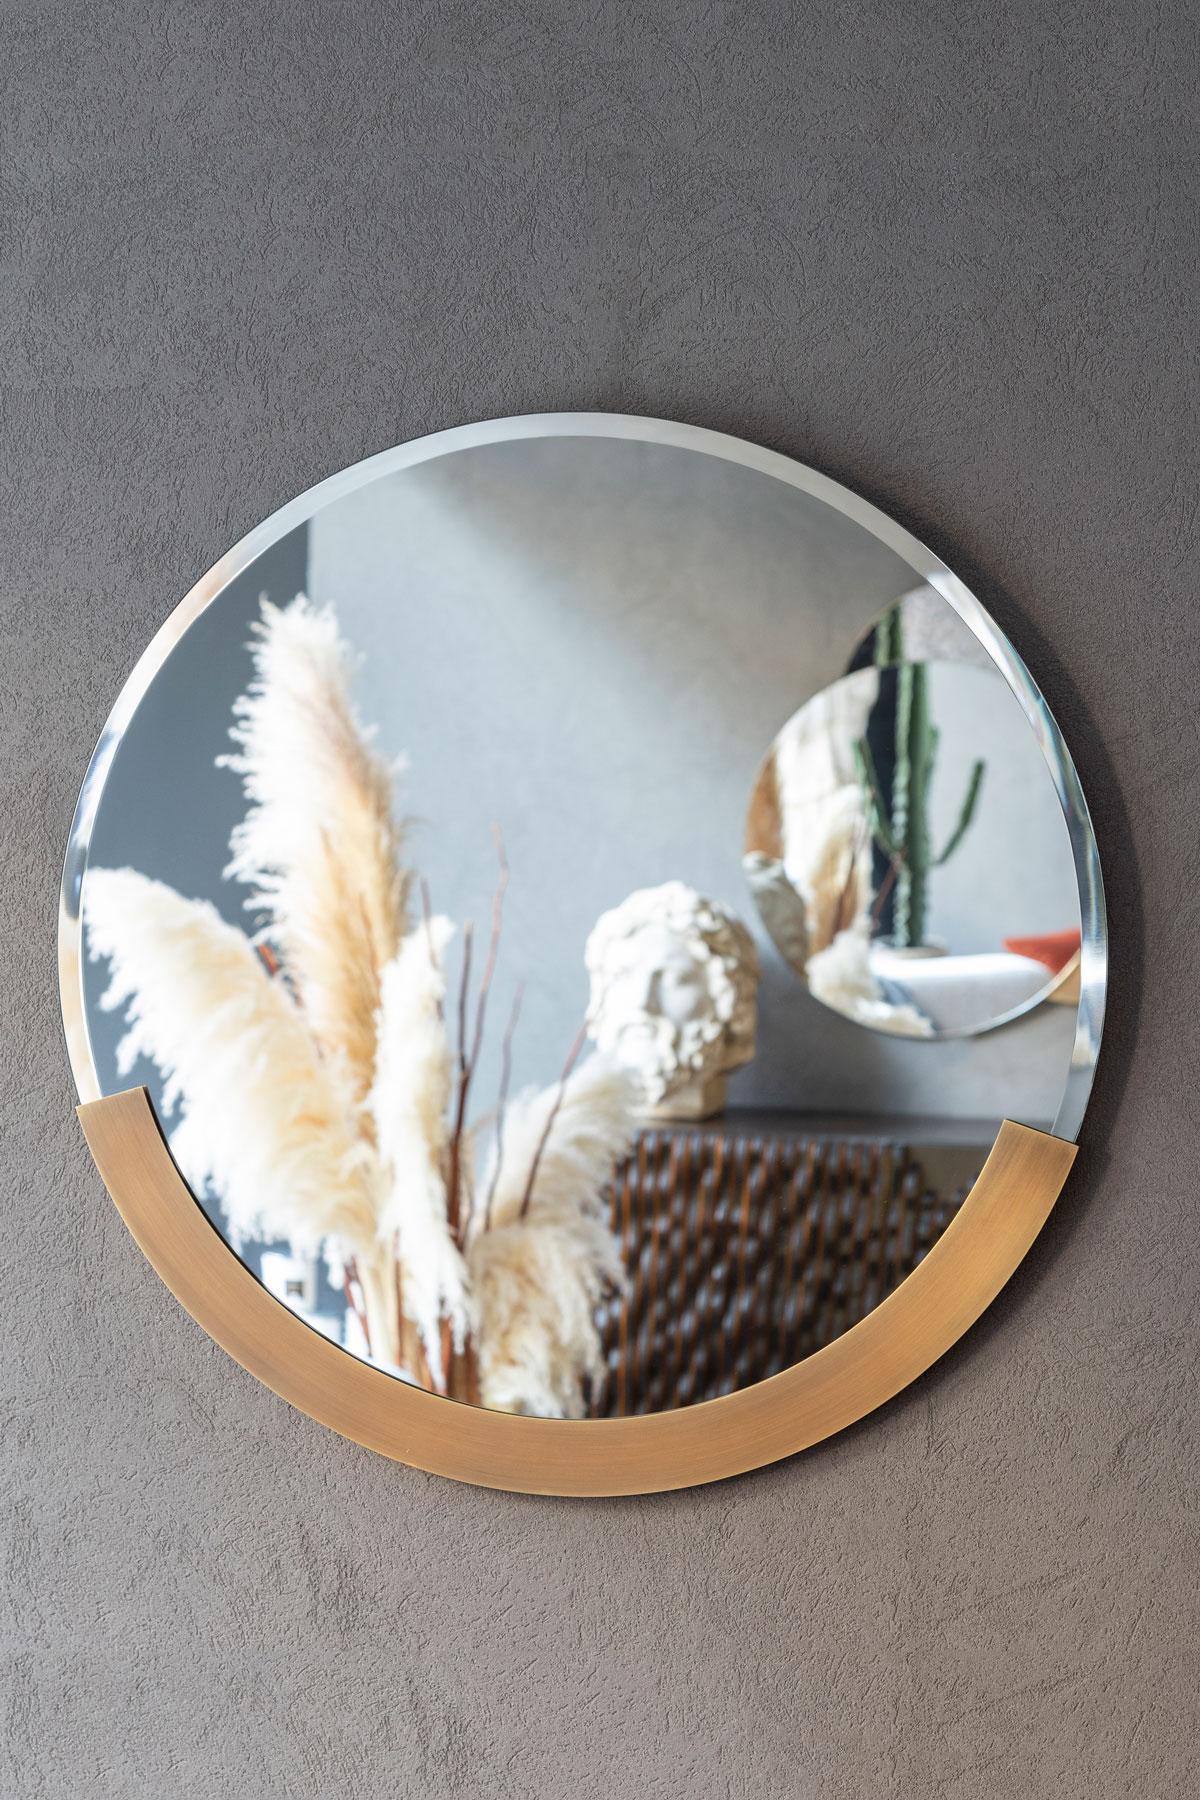 Gänseblümchenspiegel, der dich in seiner einfachsten Form reflektiert.

*Anpassbar
*Messing/Matt Chrom/ Verschiedene Farben lackiertes Metall.